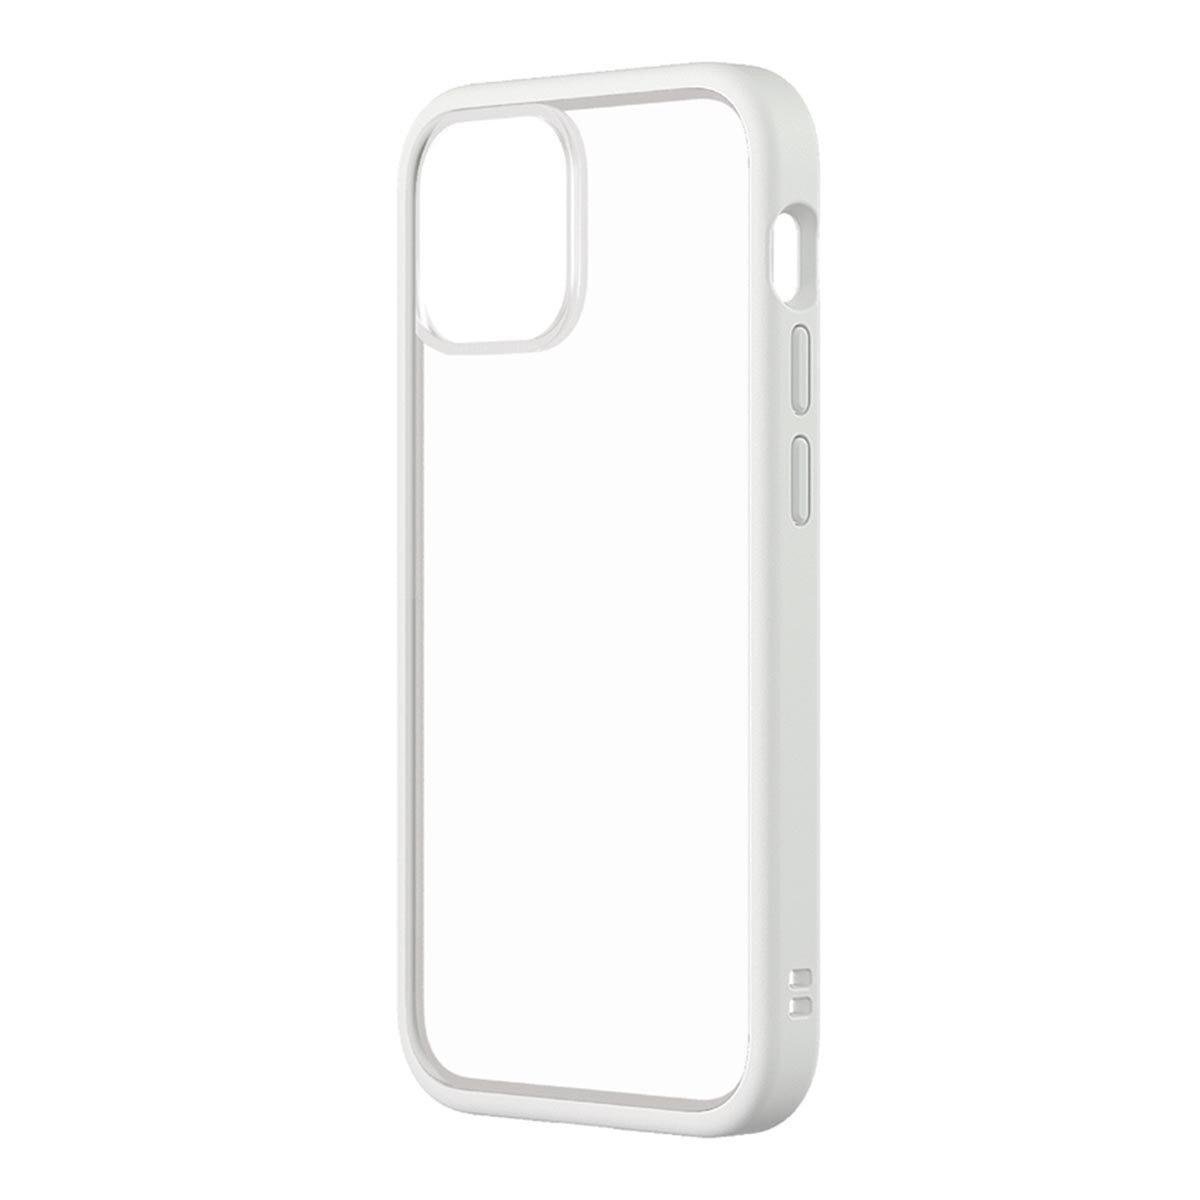 犀牛盾 iPhone 13 mini Mod NX 手機殼附9H 3D滿版玻璃保護貼 白